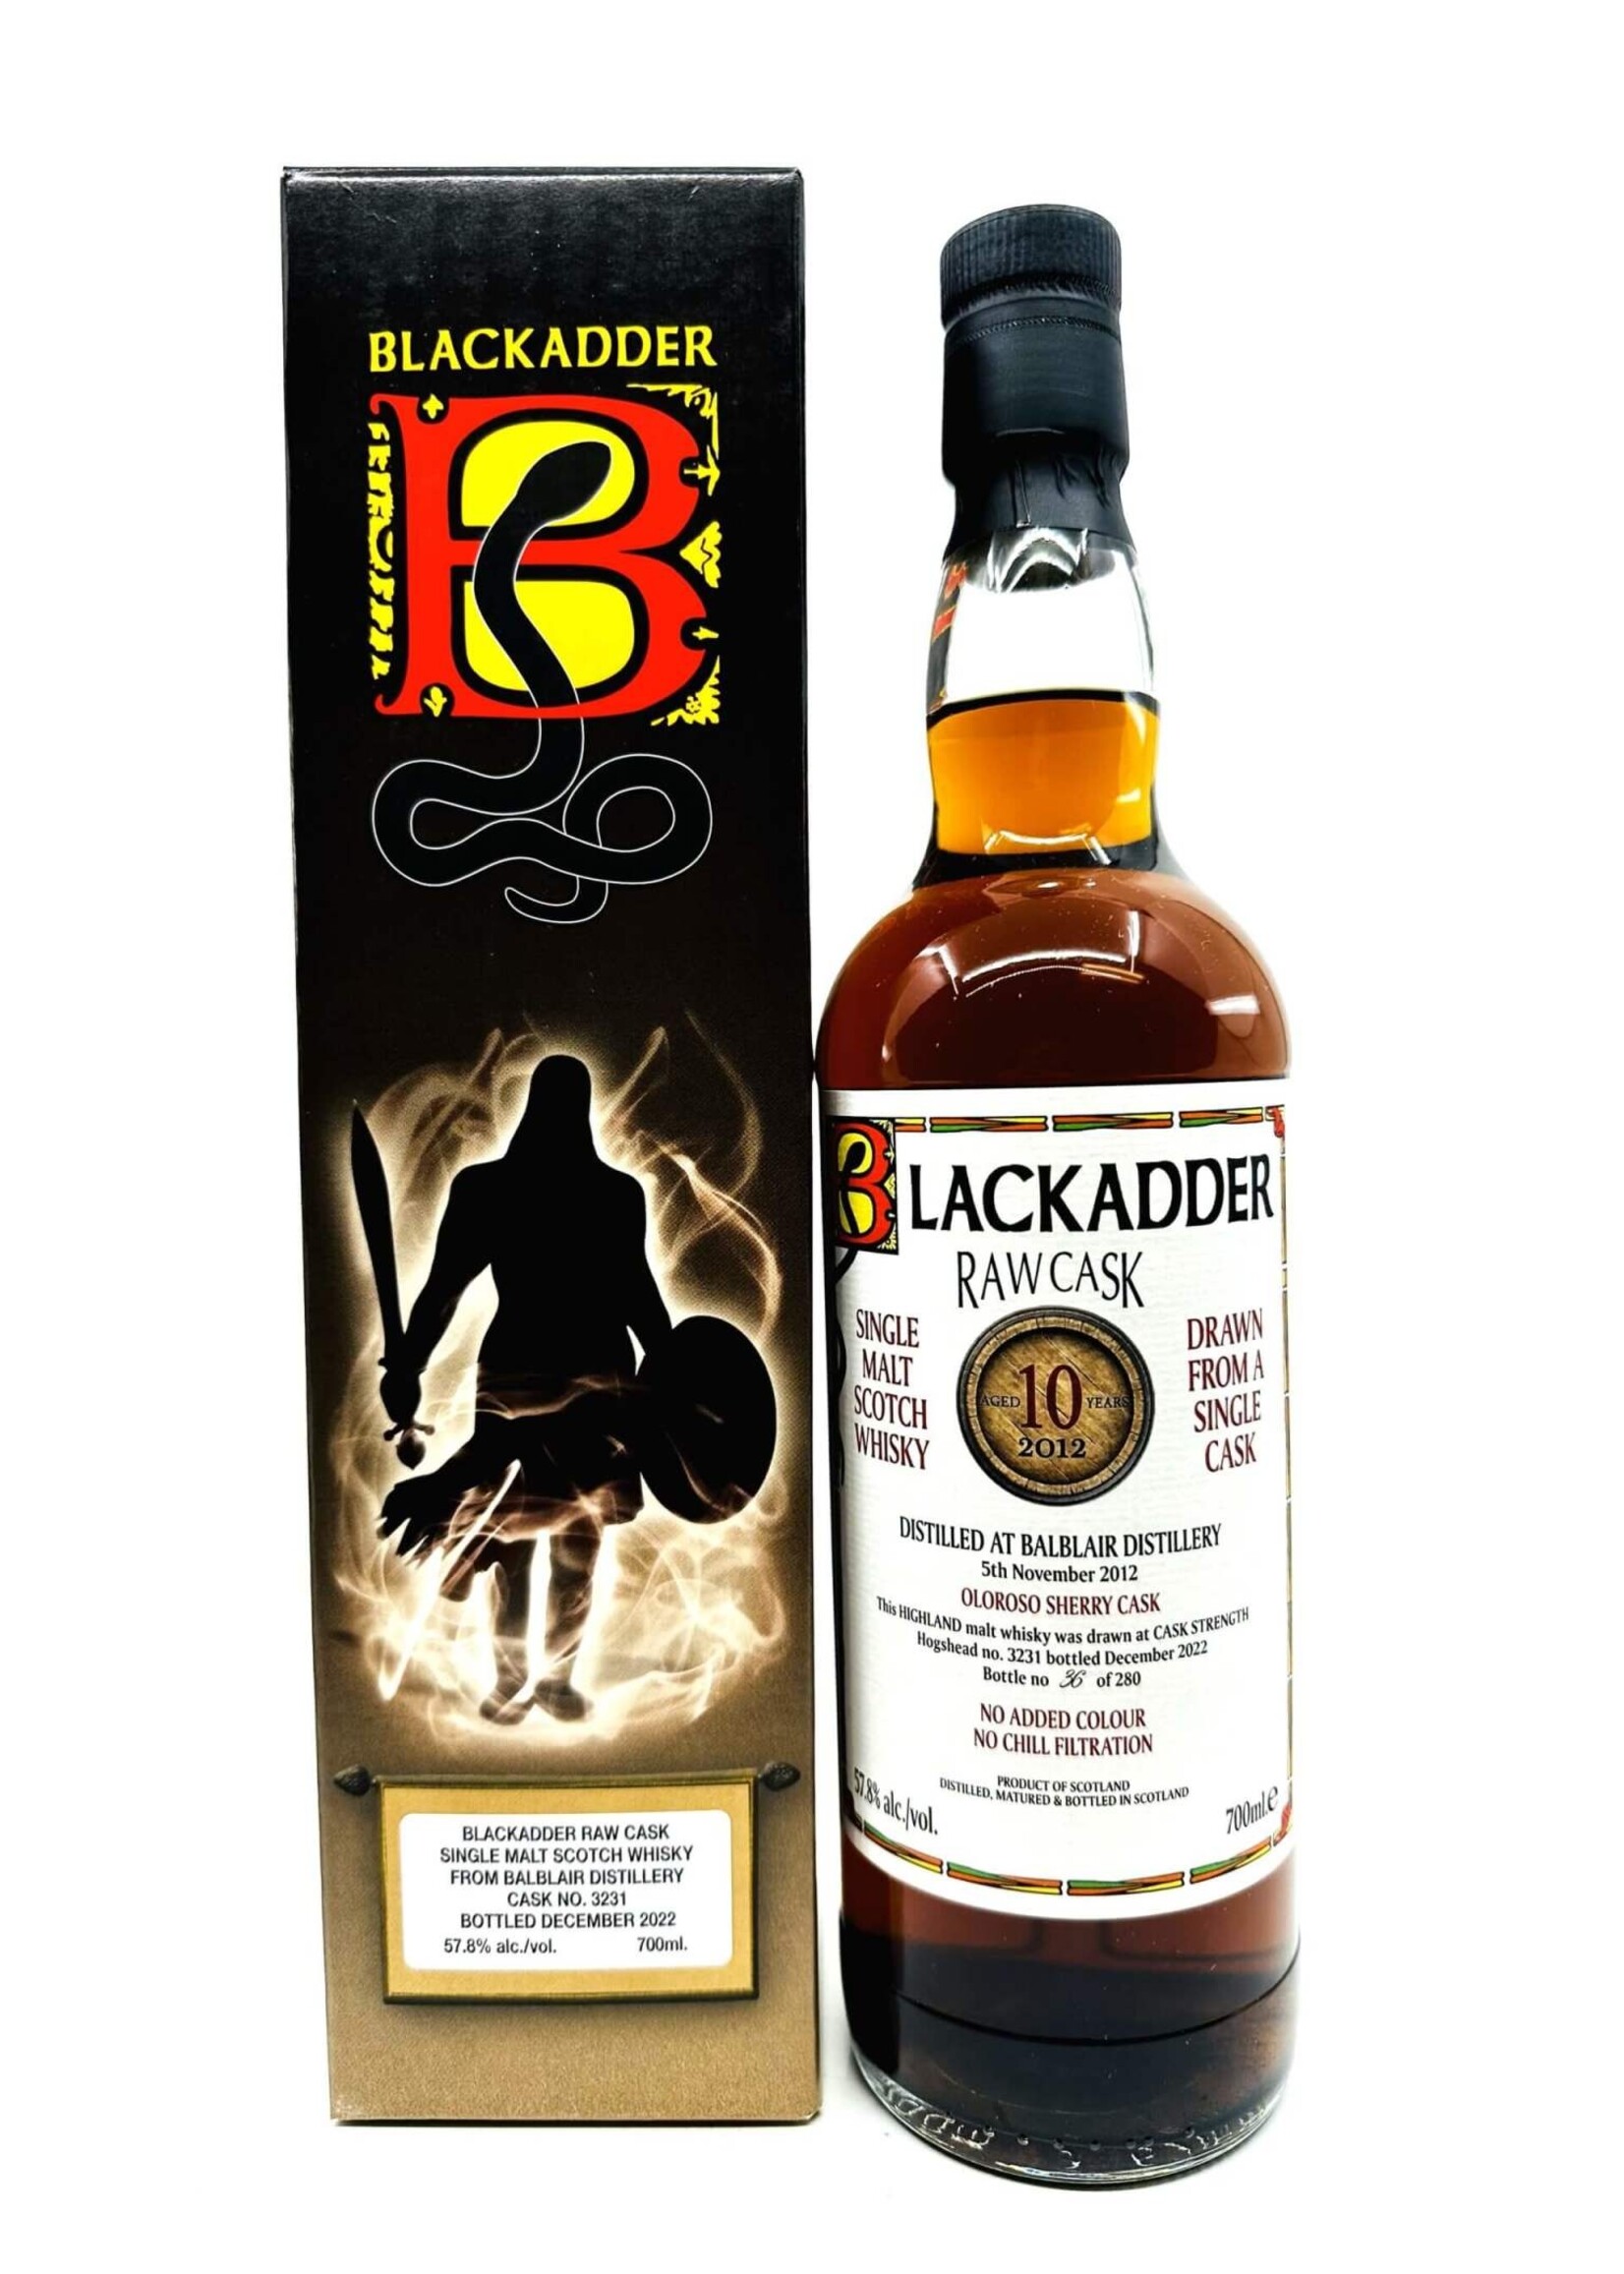 Blackadder Blackadder / Balblair 10 Year Distilled 2012 Single Cask Single Malt Scotch Whisky 62.1% abv / 700mL